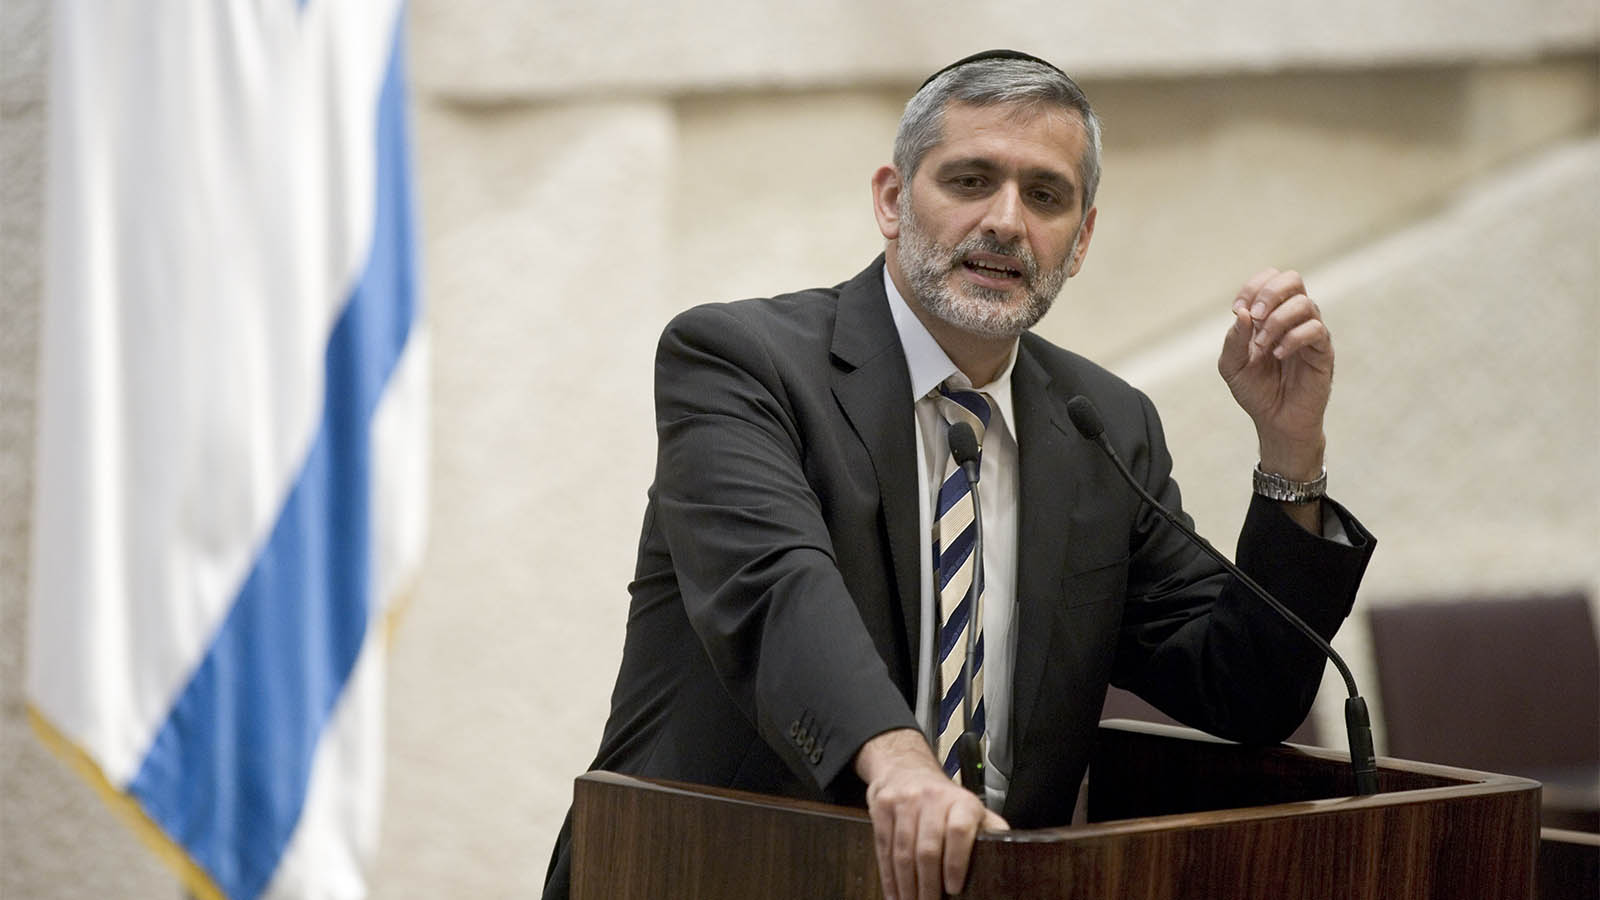 אלי ישי, שר הפנים לשעבר נואם במליאת הכנסת. 16 בנובמבר 2009 (צילום: אביר סולטן/ פלאש90)